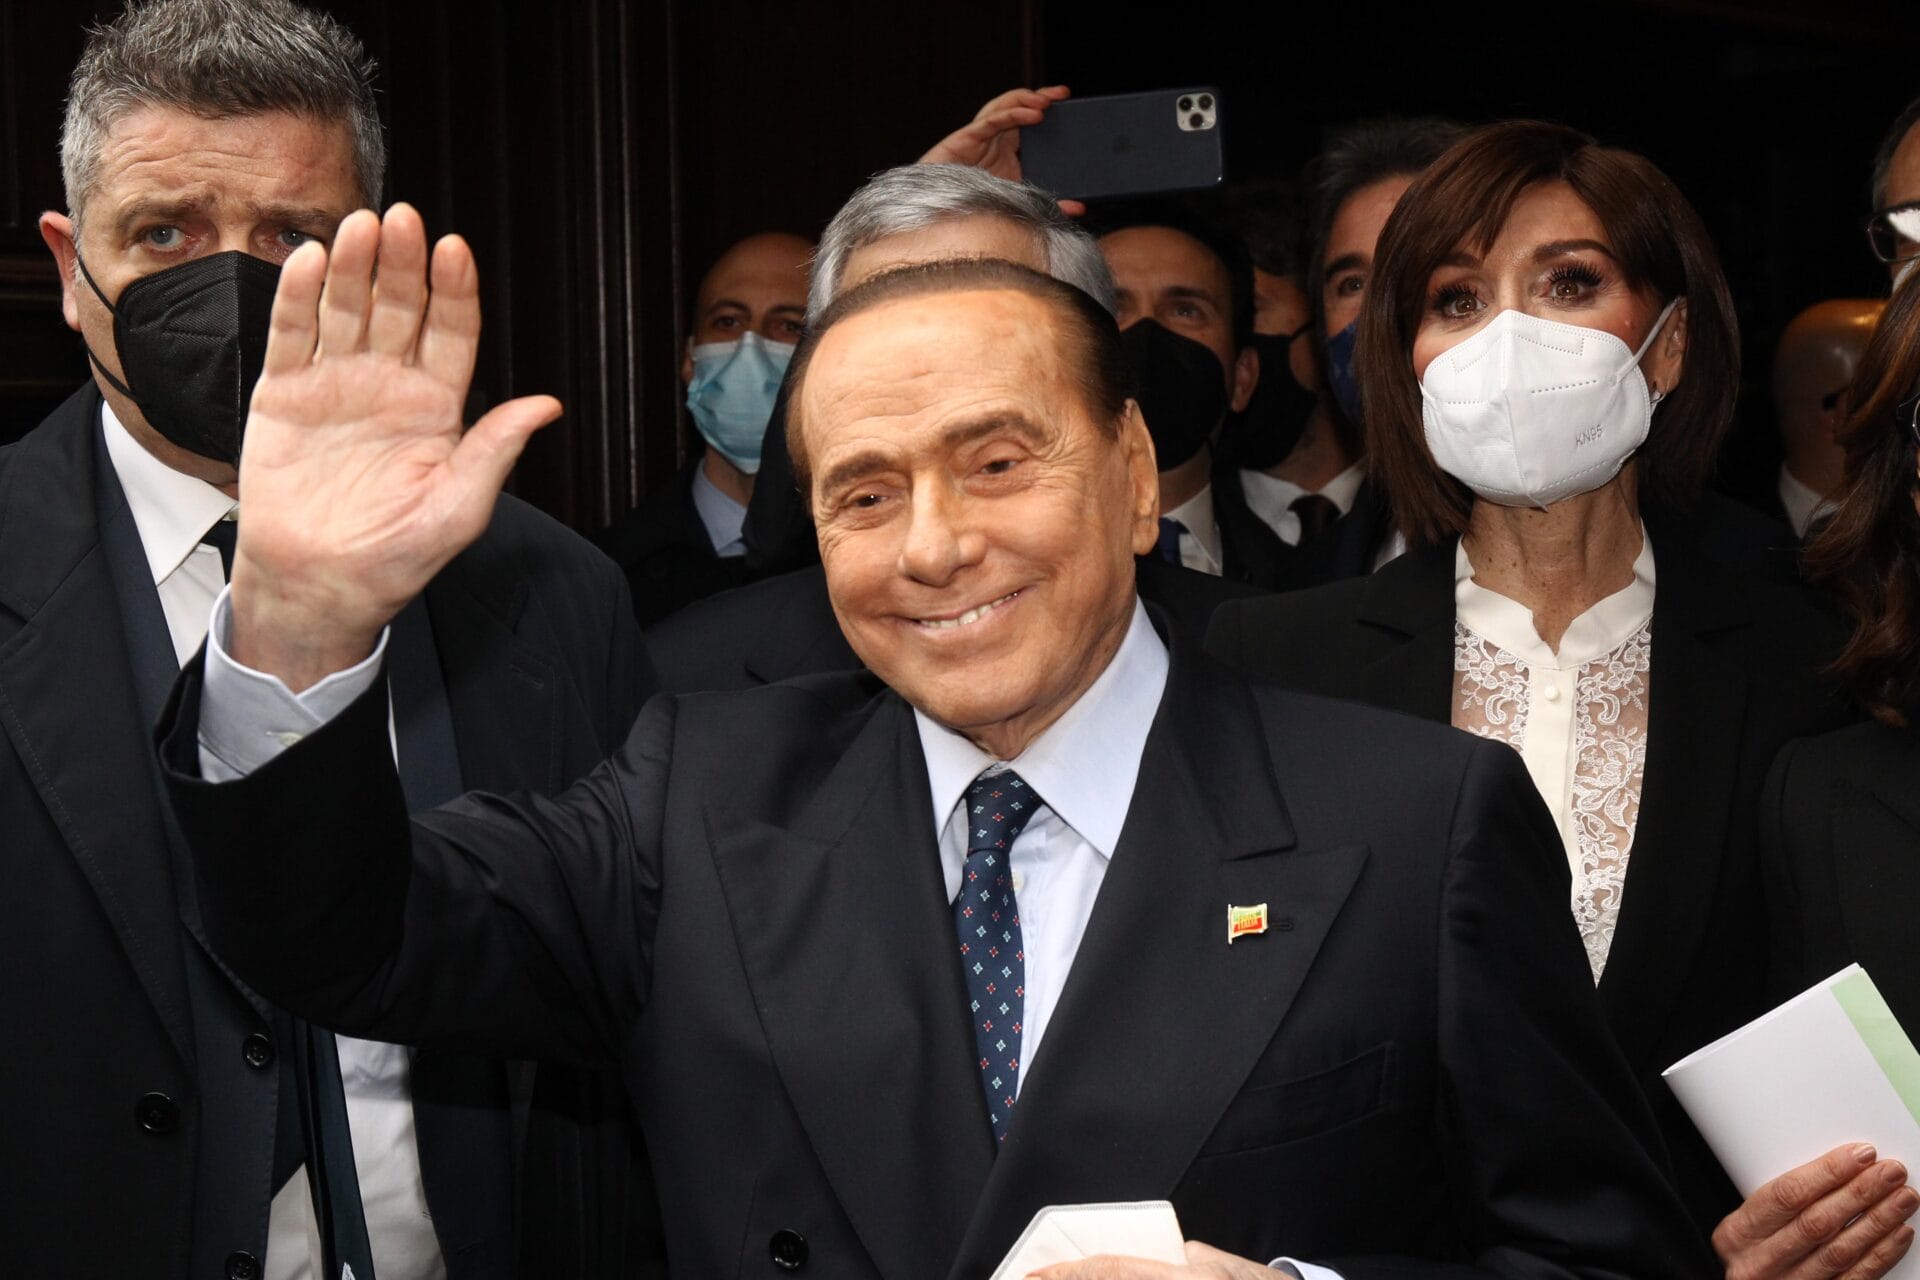 “Dead Berlusconi party” al circolo Arci, ma l’evento non c’è mai stato. Arrivano i chiarimenti